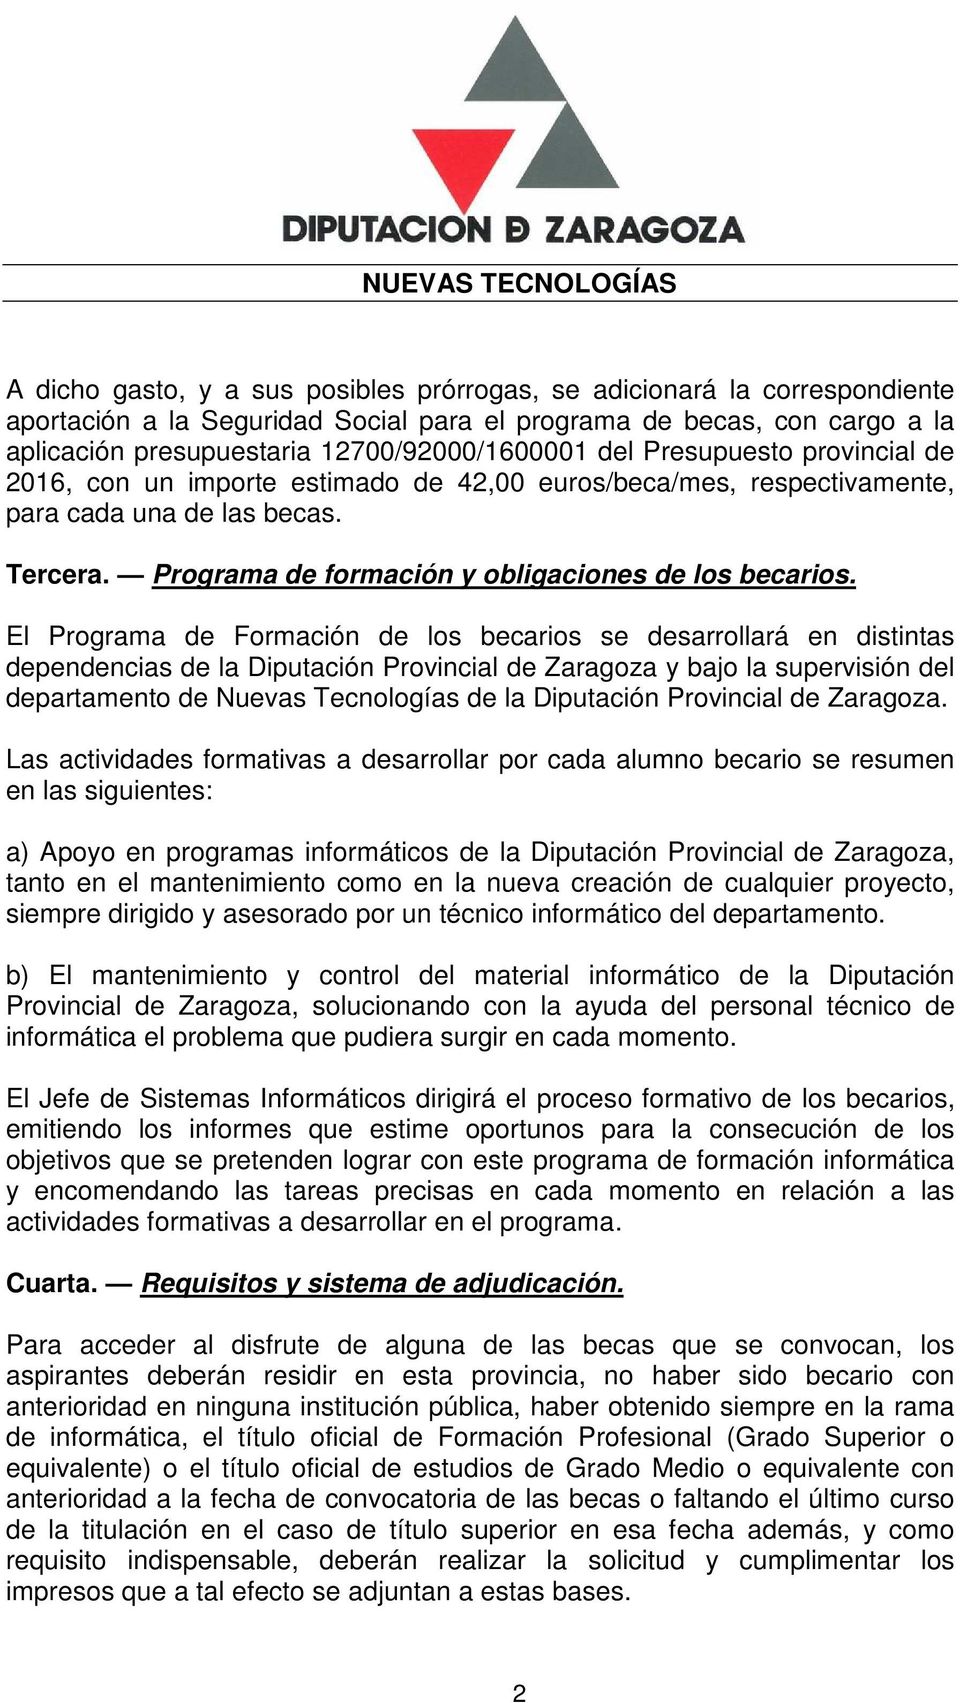 El Programa de Formación de los becarios se desarrollará en distintas dependencias de la Diputación Provincial de Zaragoza y bajo la supervisión del departamento de Nuevas Tecnologías de la